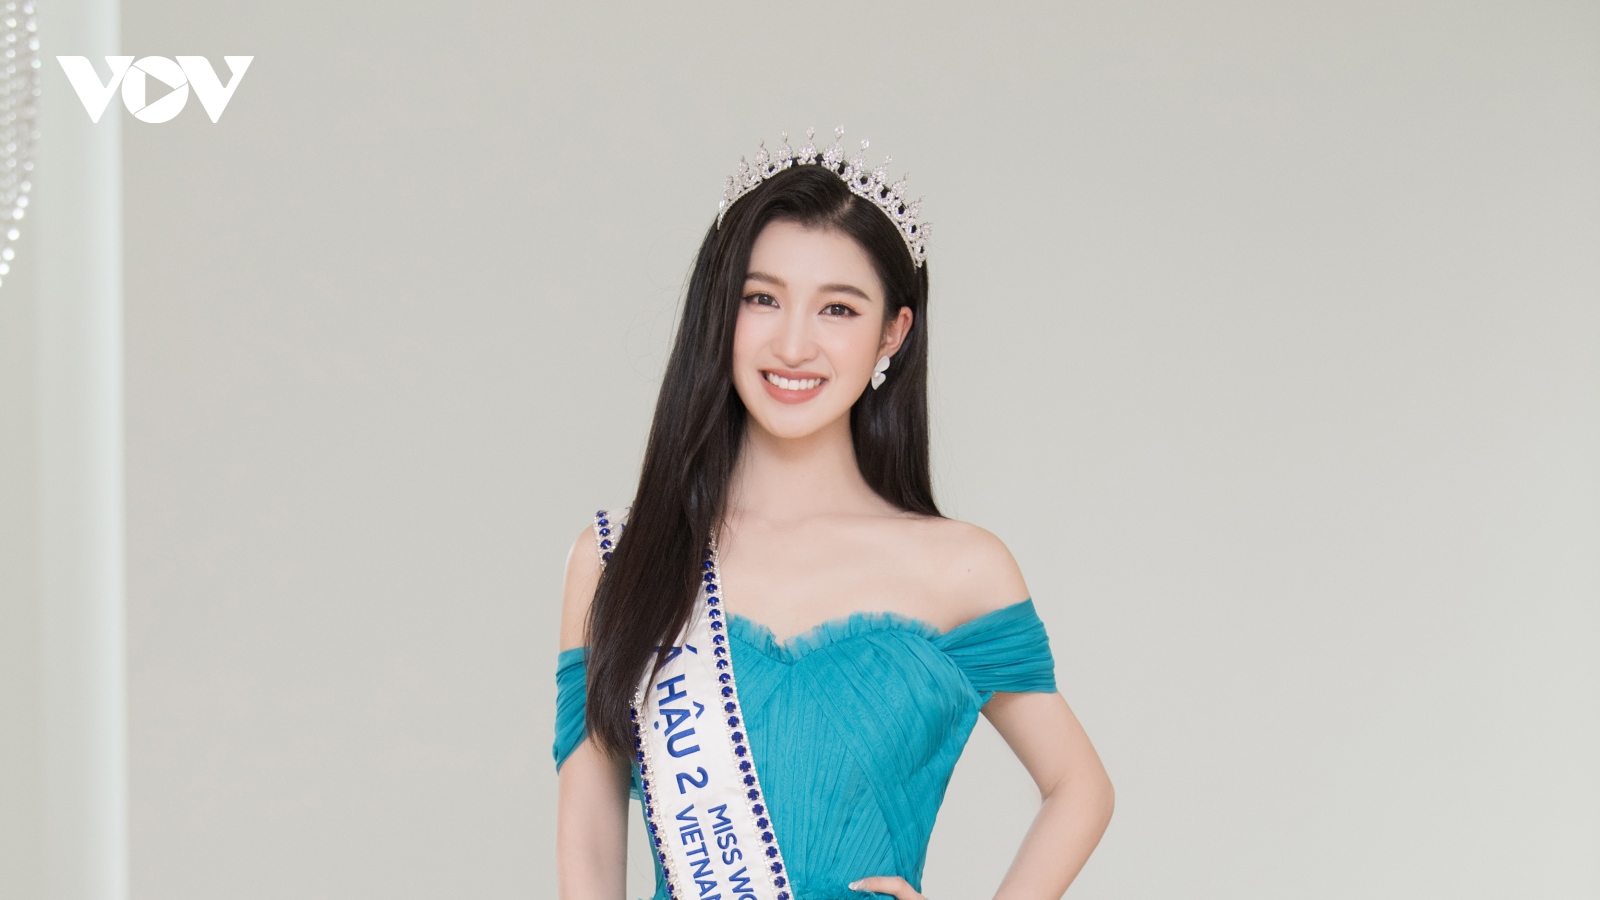 Á hậu Phương Nhi: Miss World Việt Nam đã “chữa bệnh” nhút nhát cho tôi